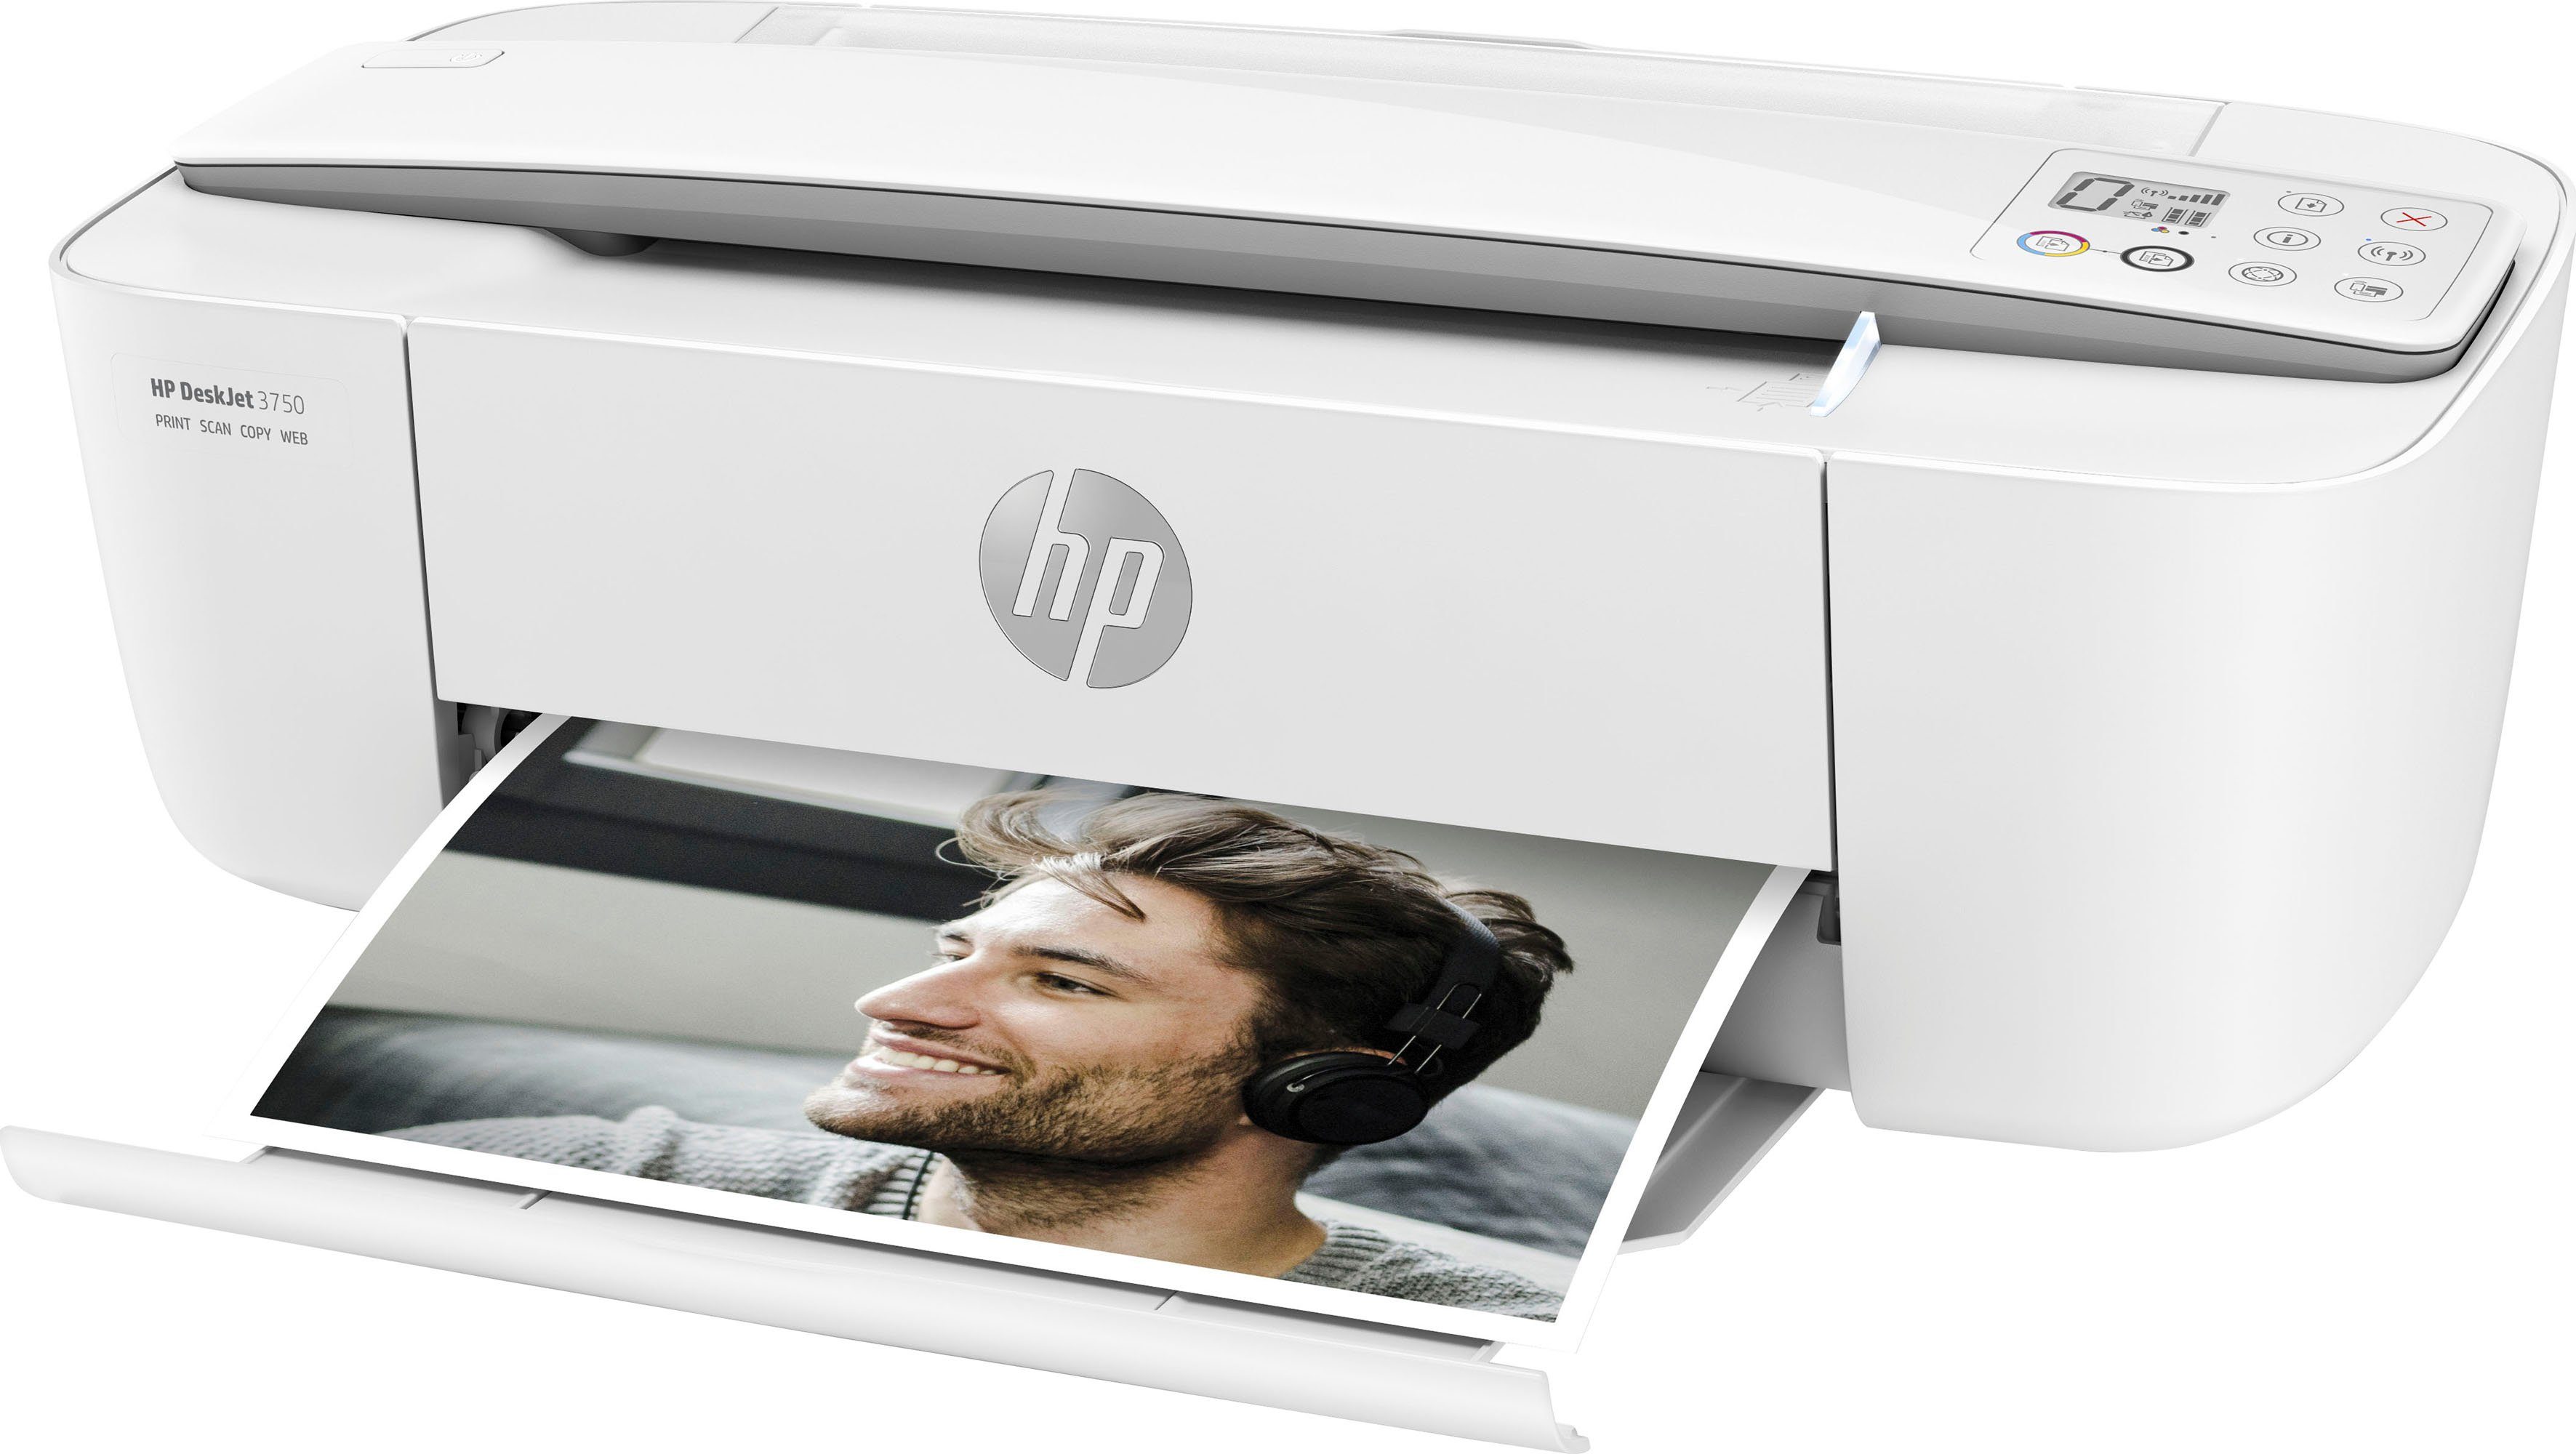 HP Drucker DeskJet 3750 (Wi-Fi), (WLAN Multifunktionsdrucker, Instant kompatibel) Ink HP